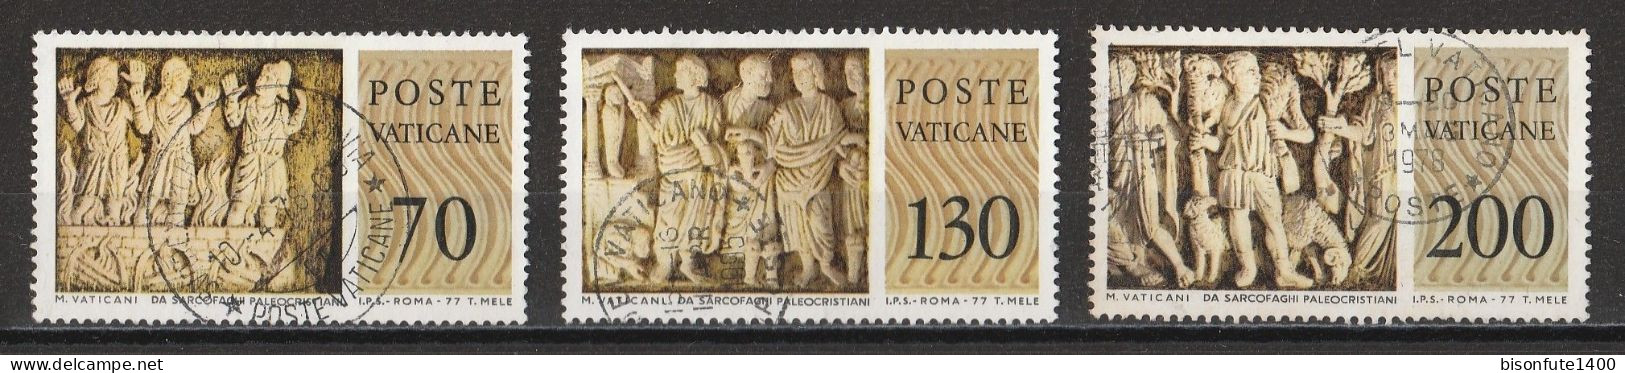 Vatican 1977 : Timbres Yvert & Tellier N° 636 - 638 - 642 - 643 - 646 - 648 Et 649 Oblitérés. - Oblitérés